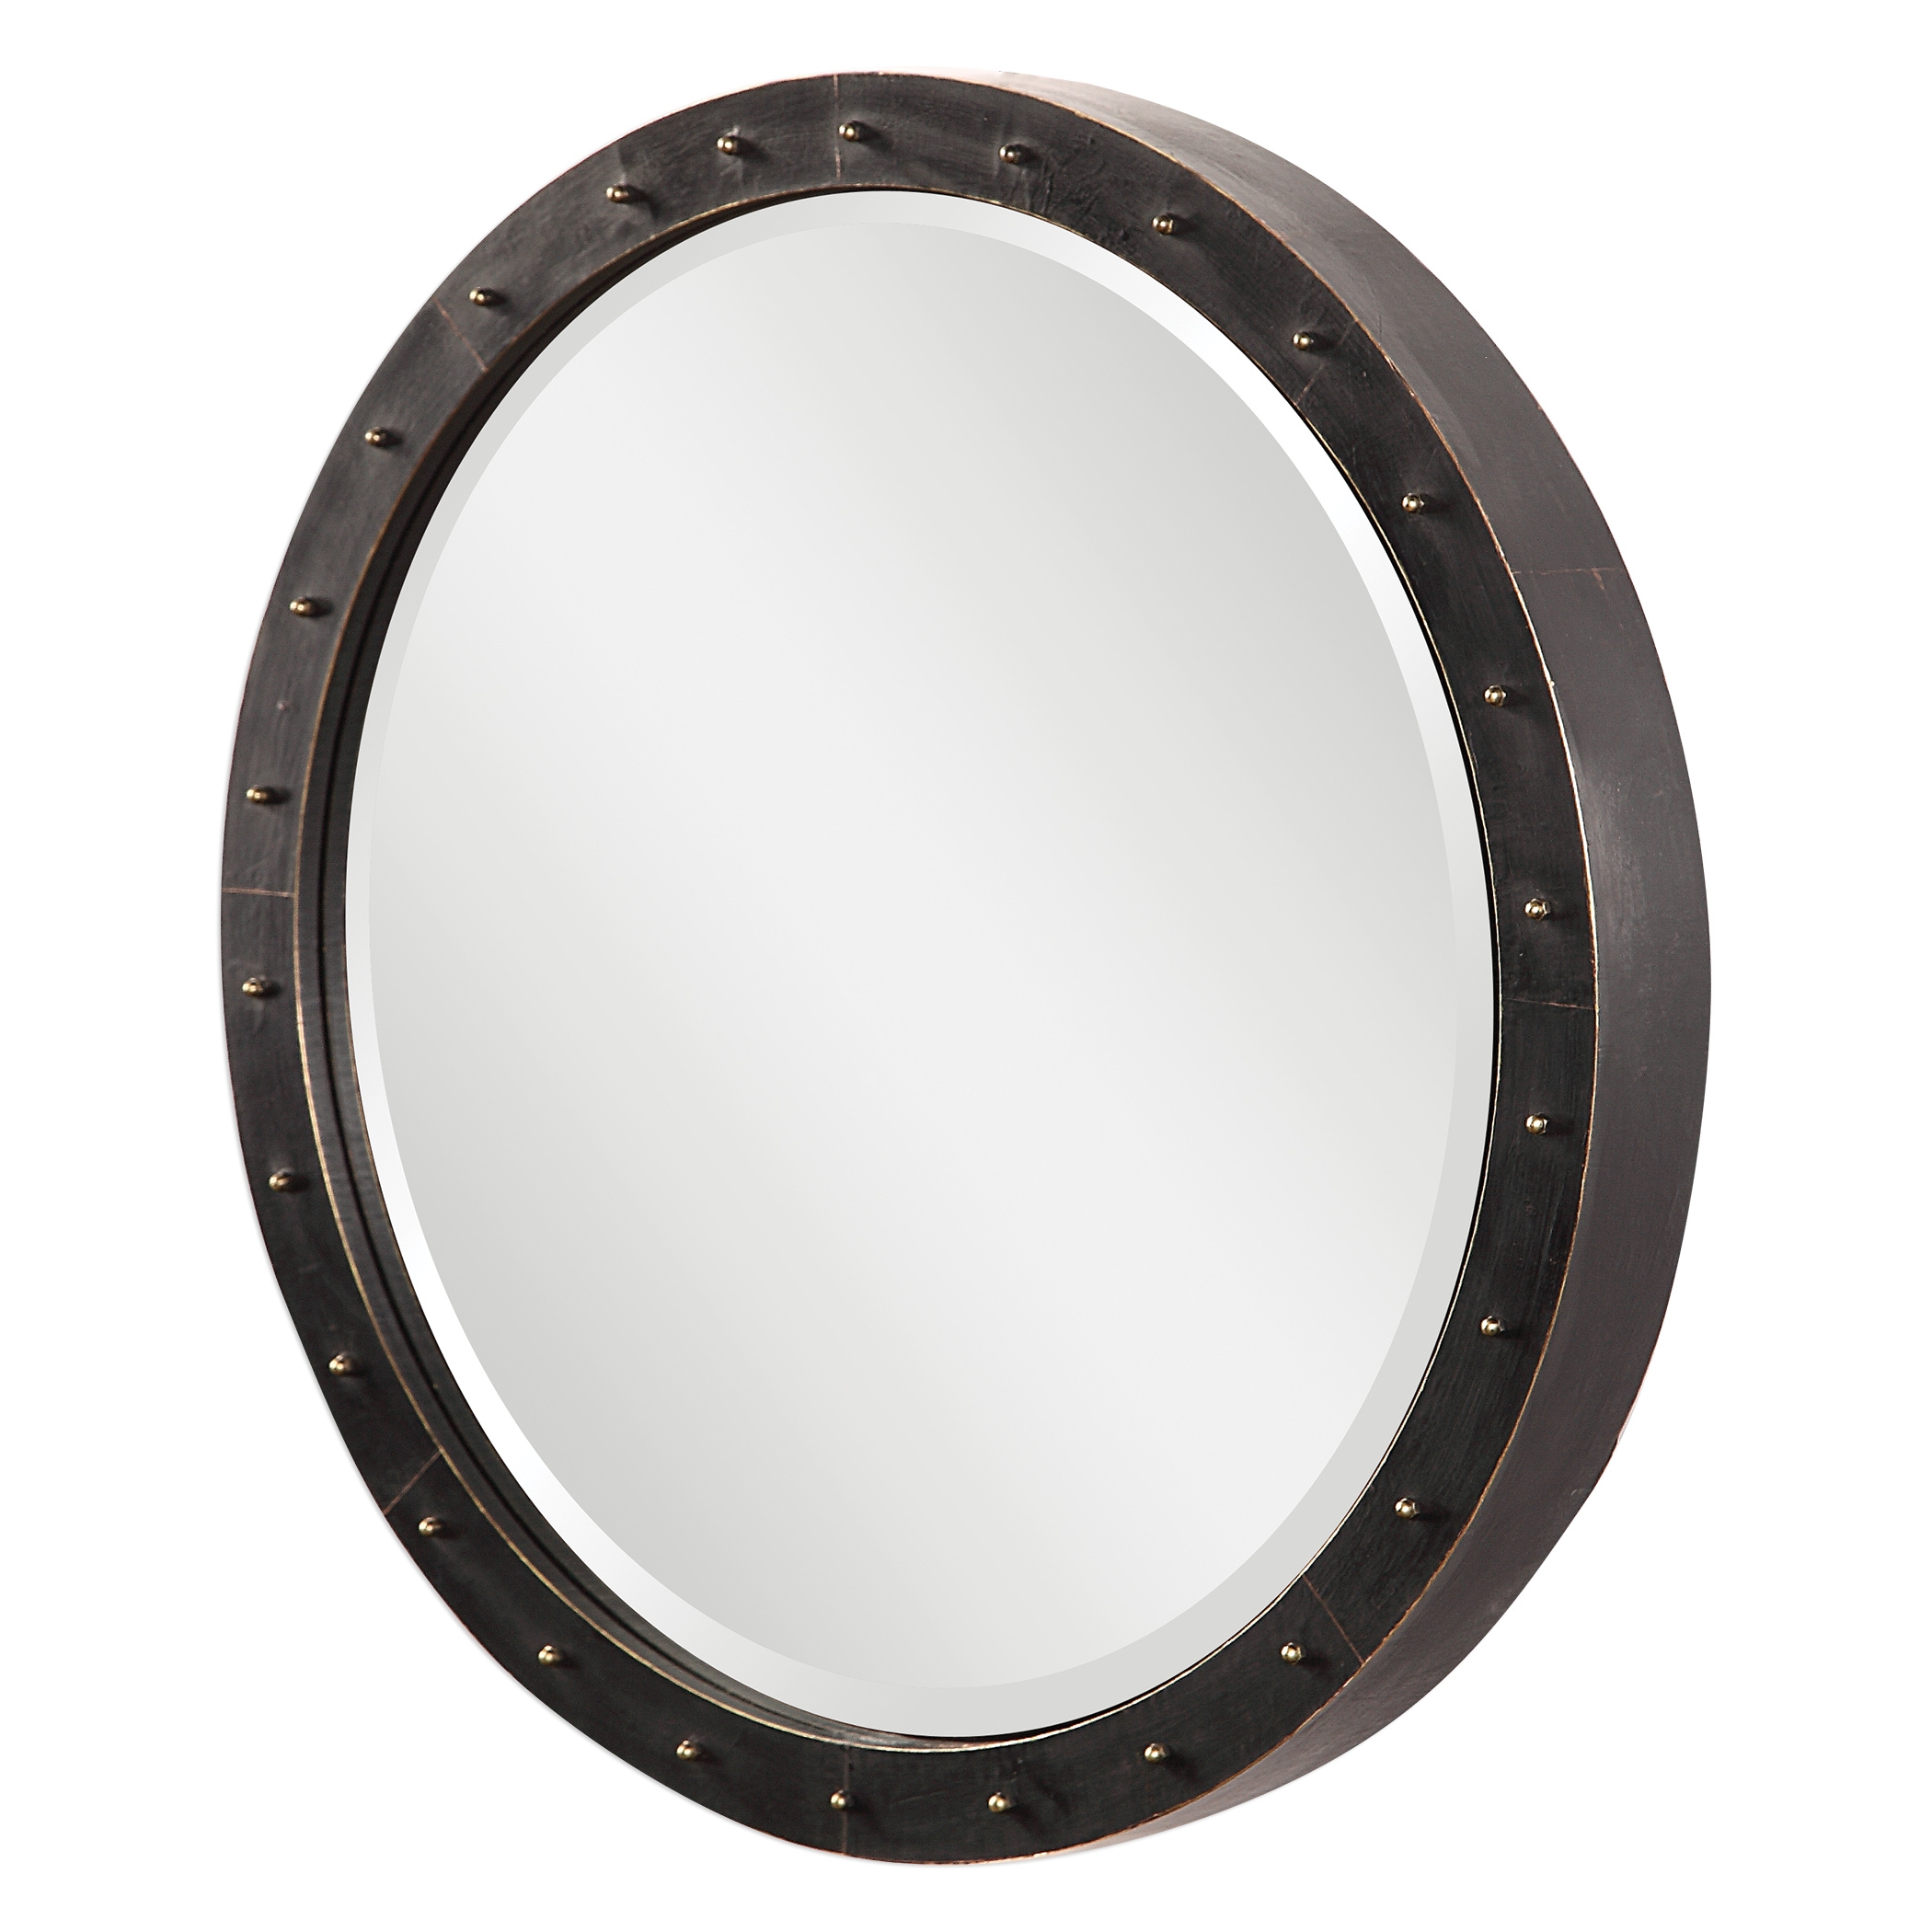 Beldon Round Industrial Mirror, Dark Bronze - Image 1